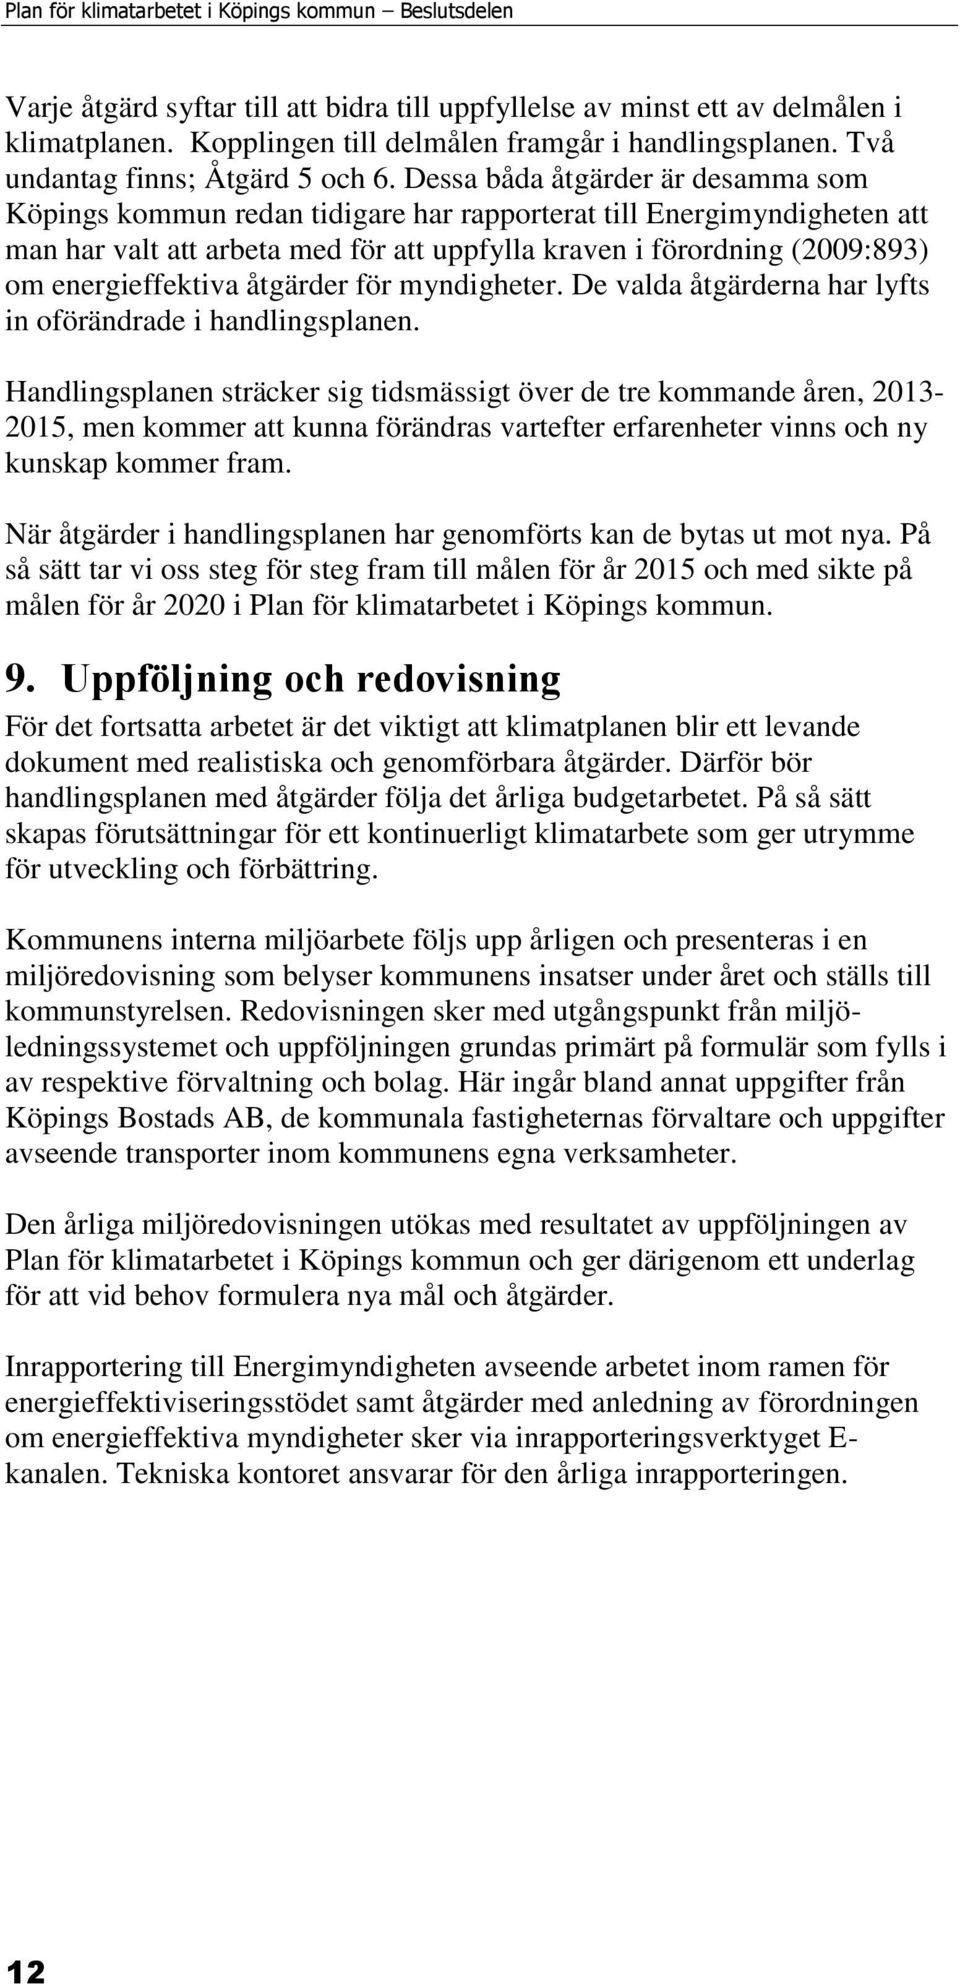 Dessa båda åtgärder är desamma som Köpings kommun redan tidigare har rapporterat till Energimyndigheten att man har valt att arbeta med för att uppfylla kraven i förordning (2009:893) om